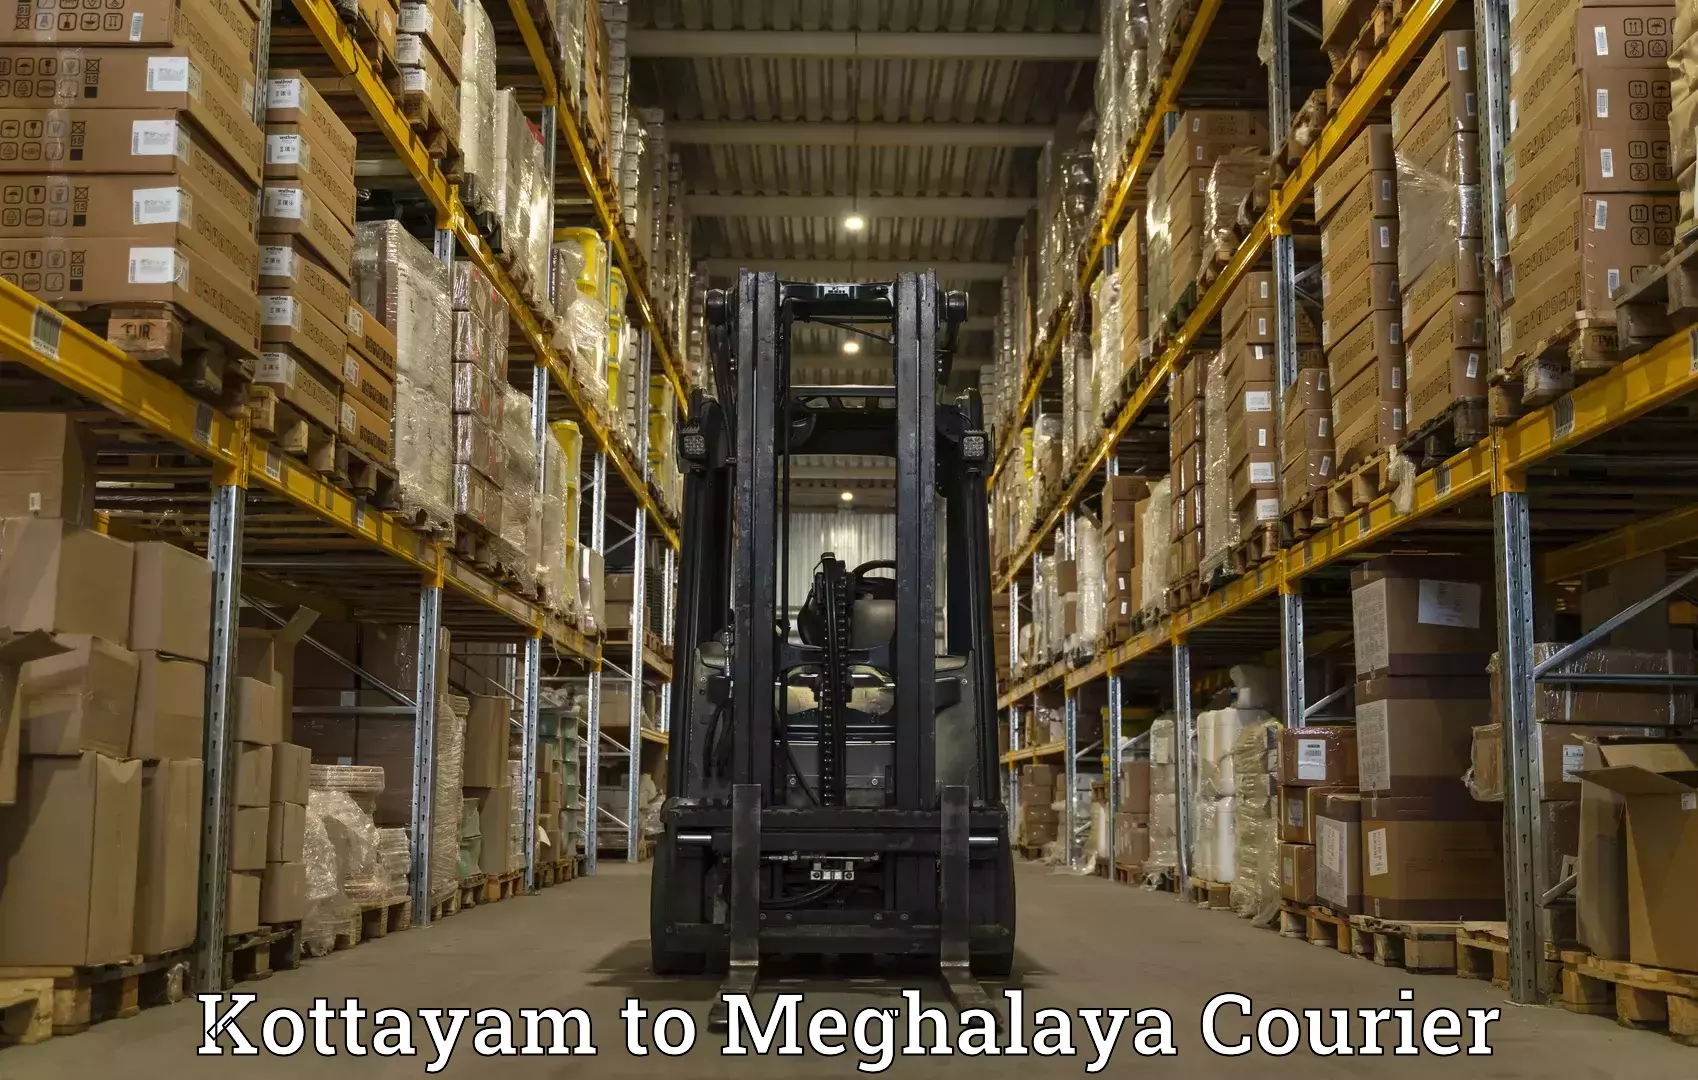 Advanced shipping technology Kottayam to Meghalaya